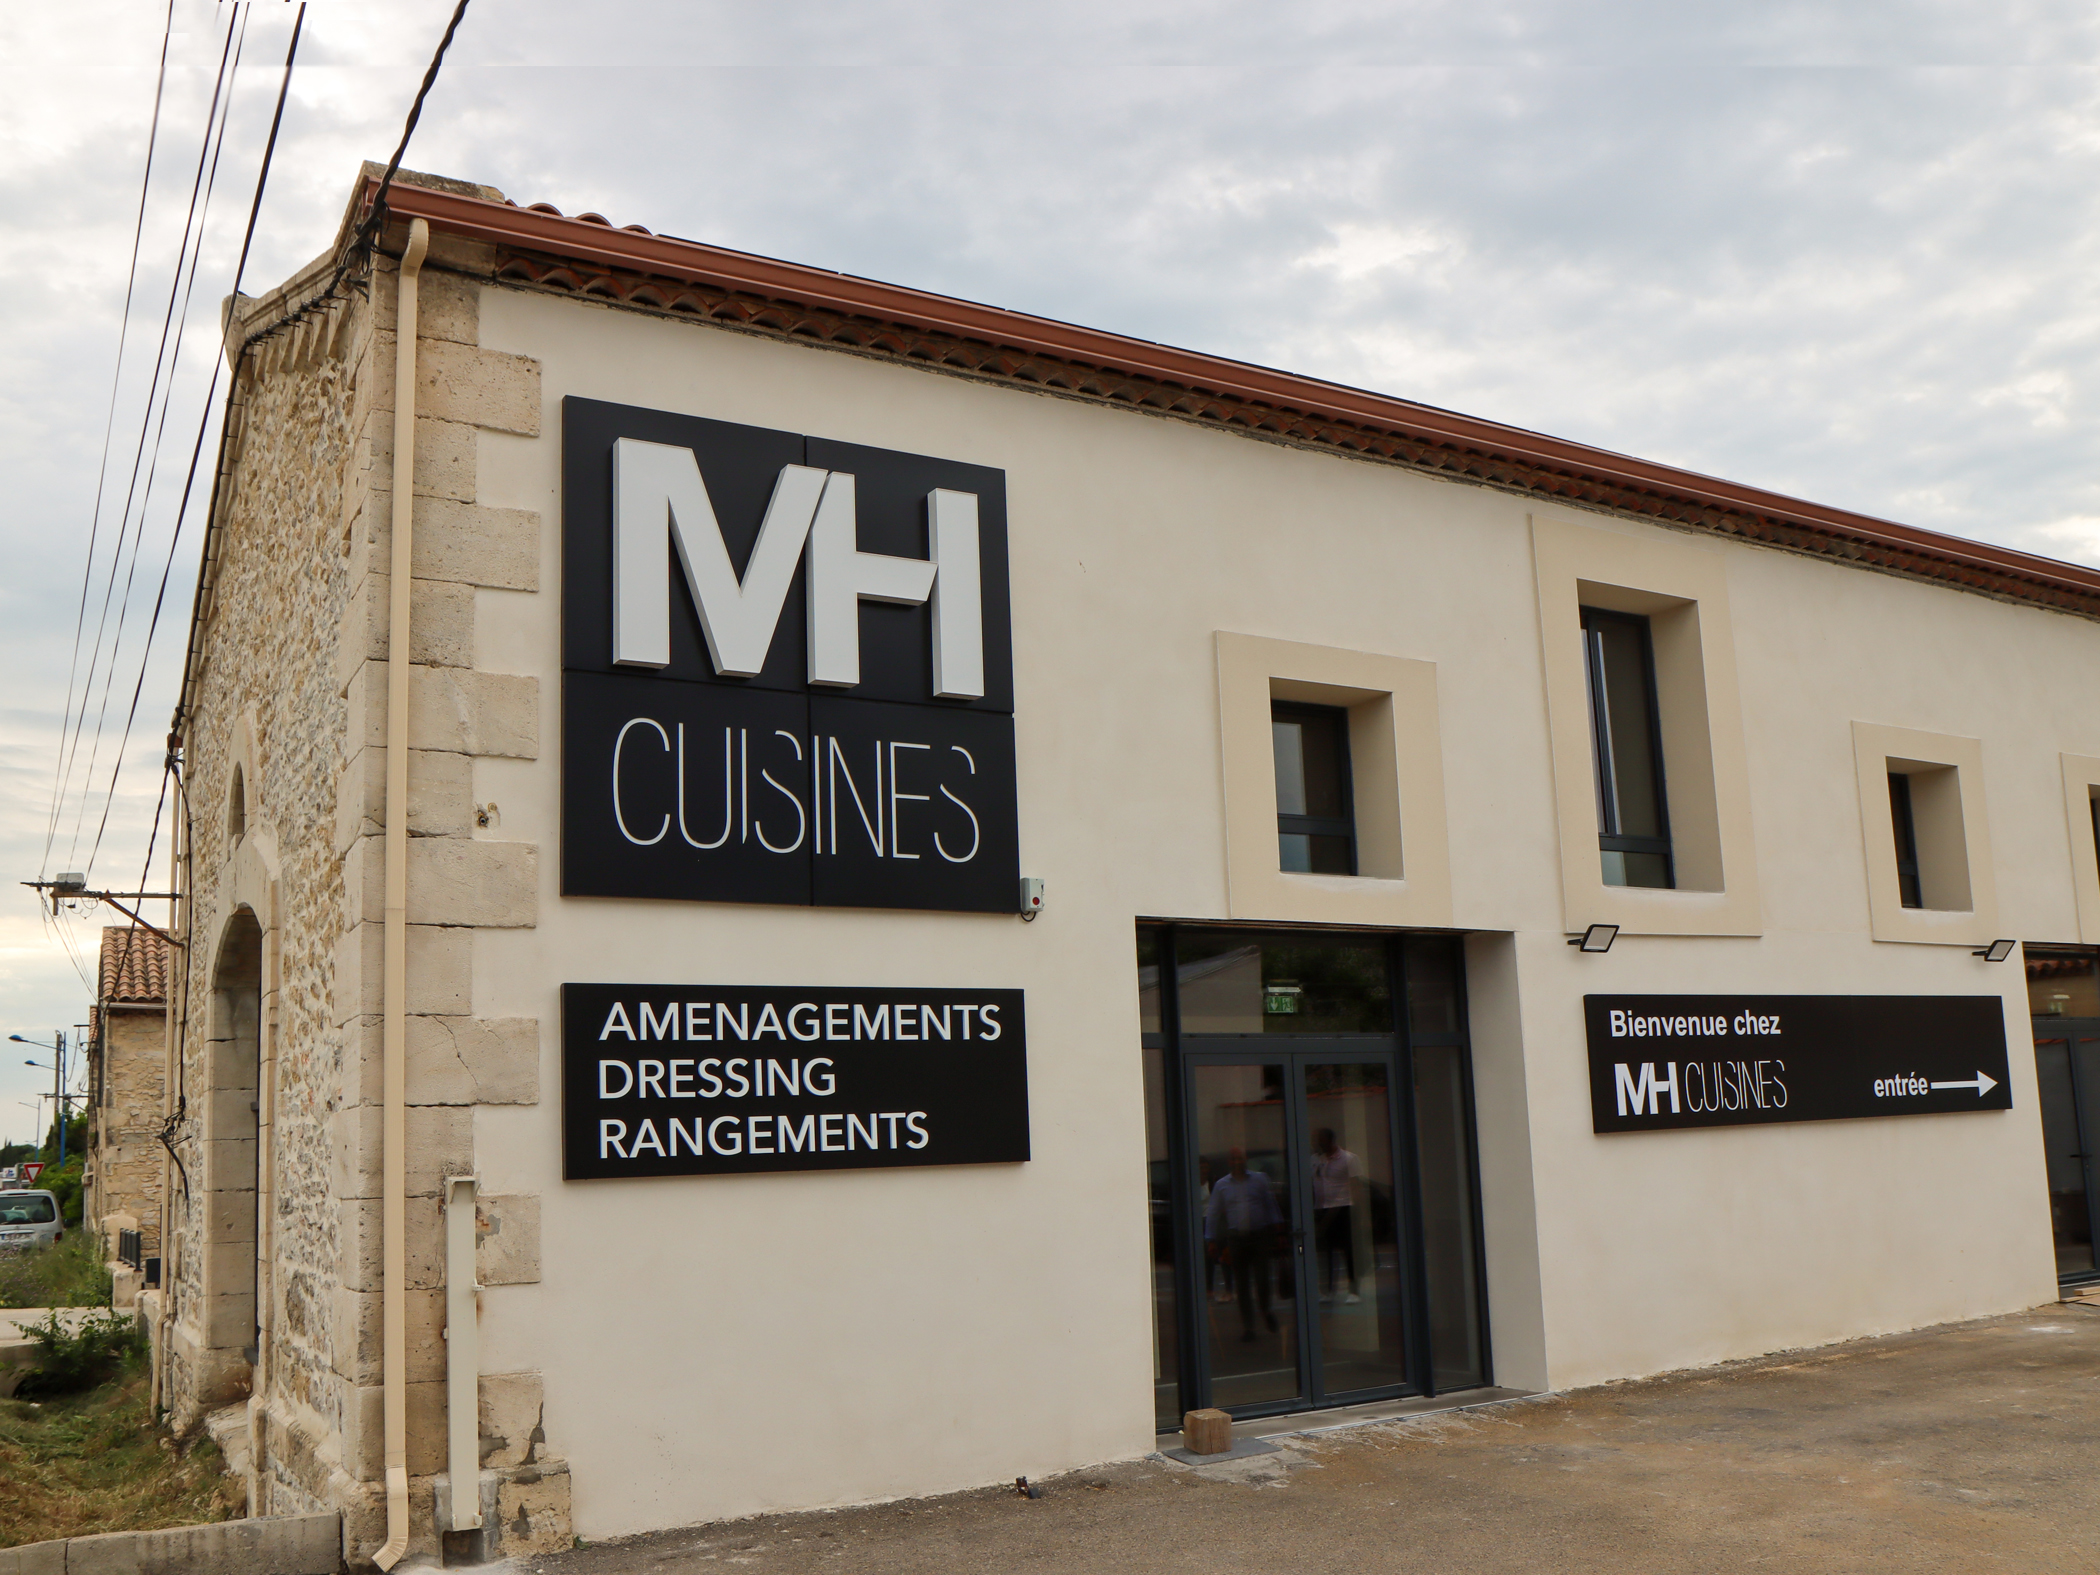 Cuisiniste Votre magasin de cuisine sur-mesure : MH cuisines Montpellier